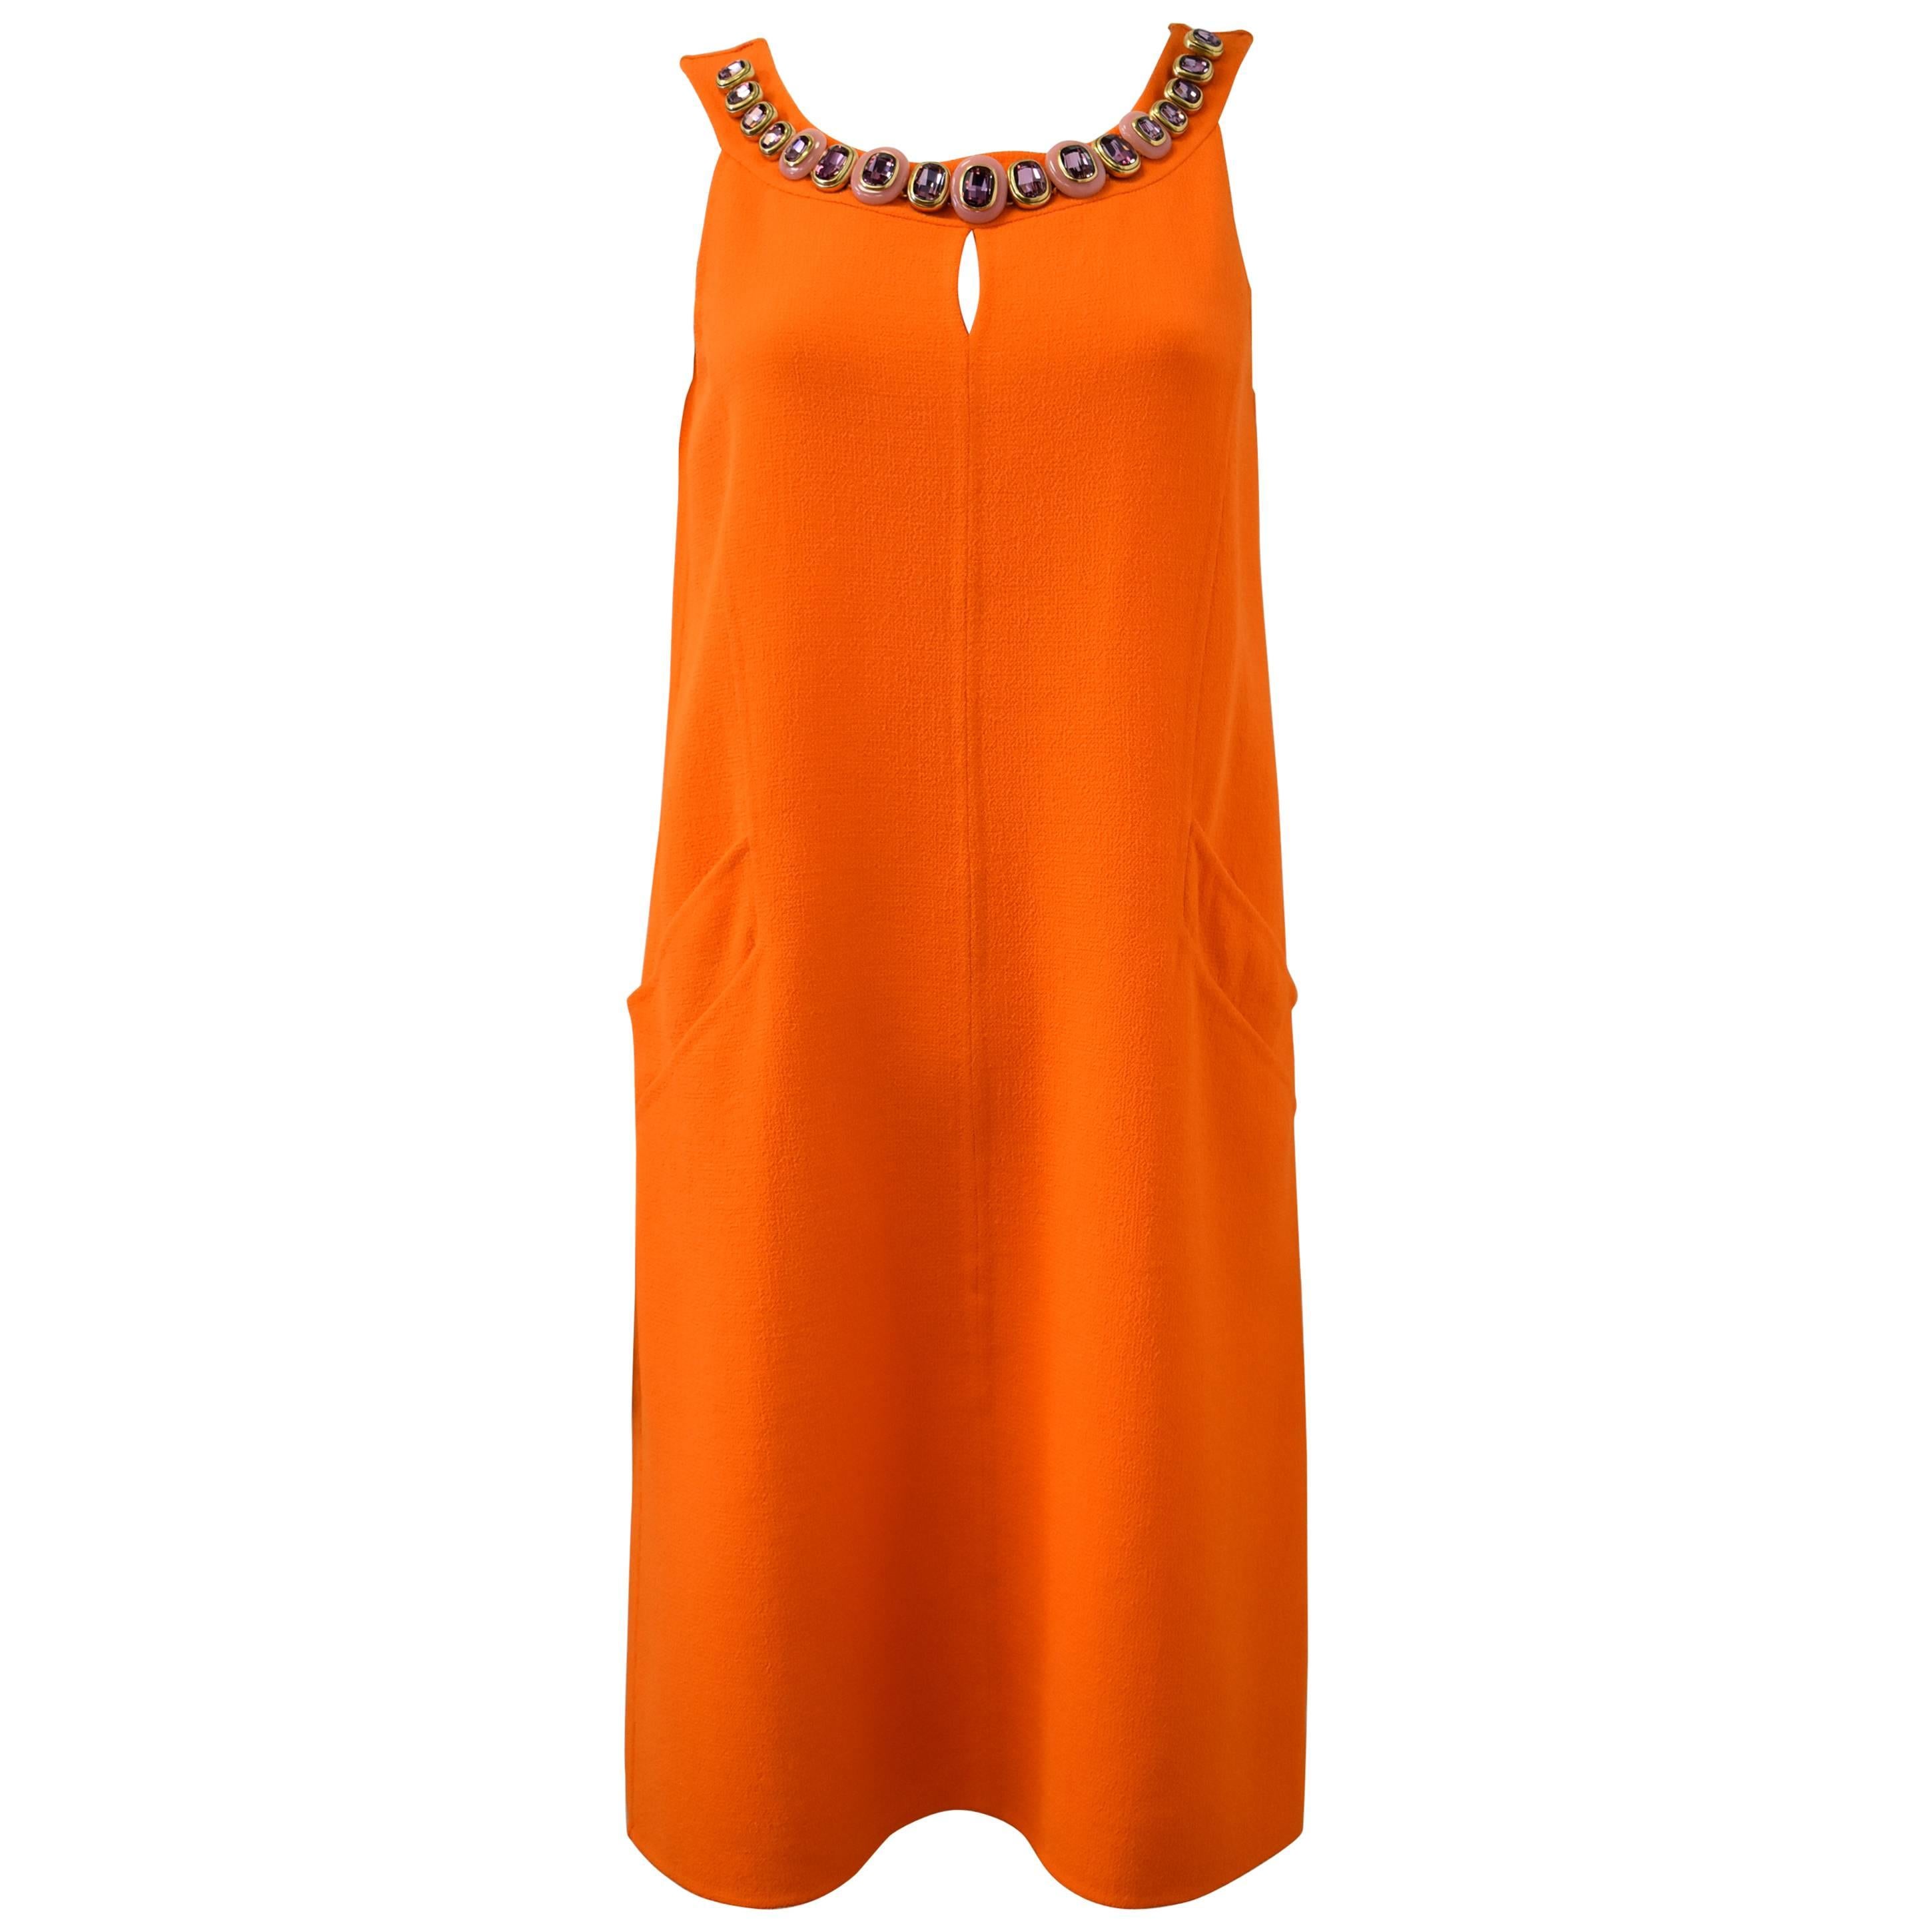 Oscar de La Renta Orange Shift Dress with Embellished Collar S/S 2014